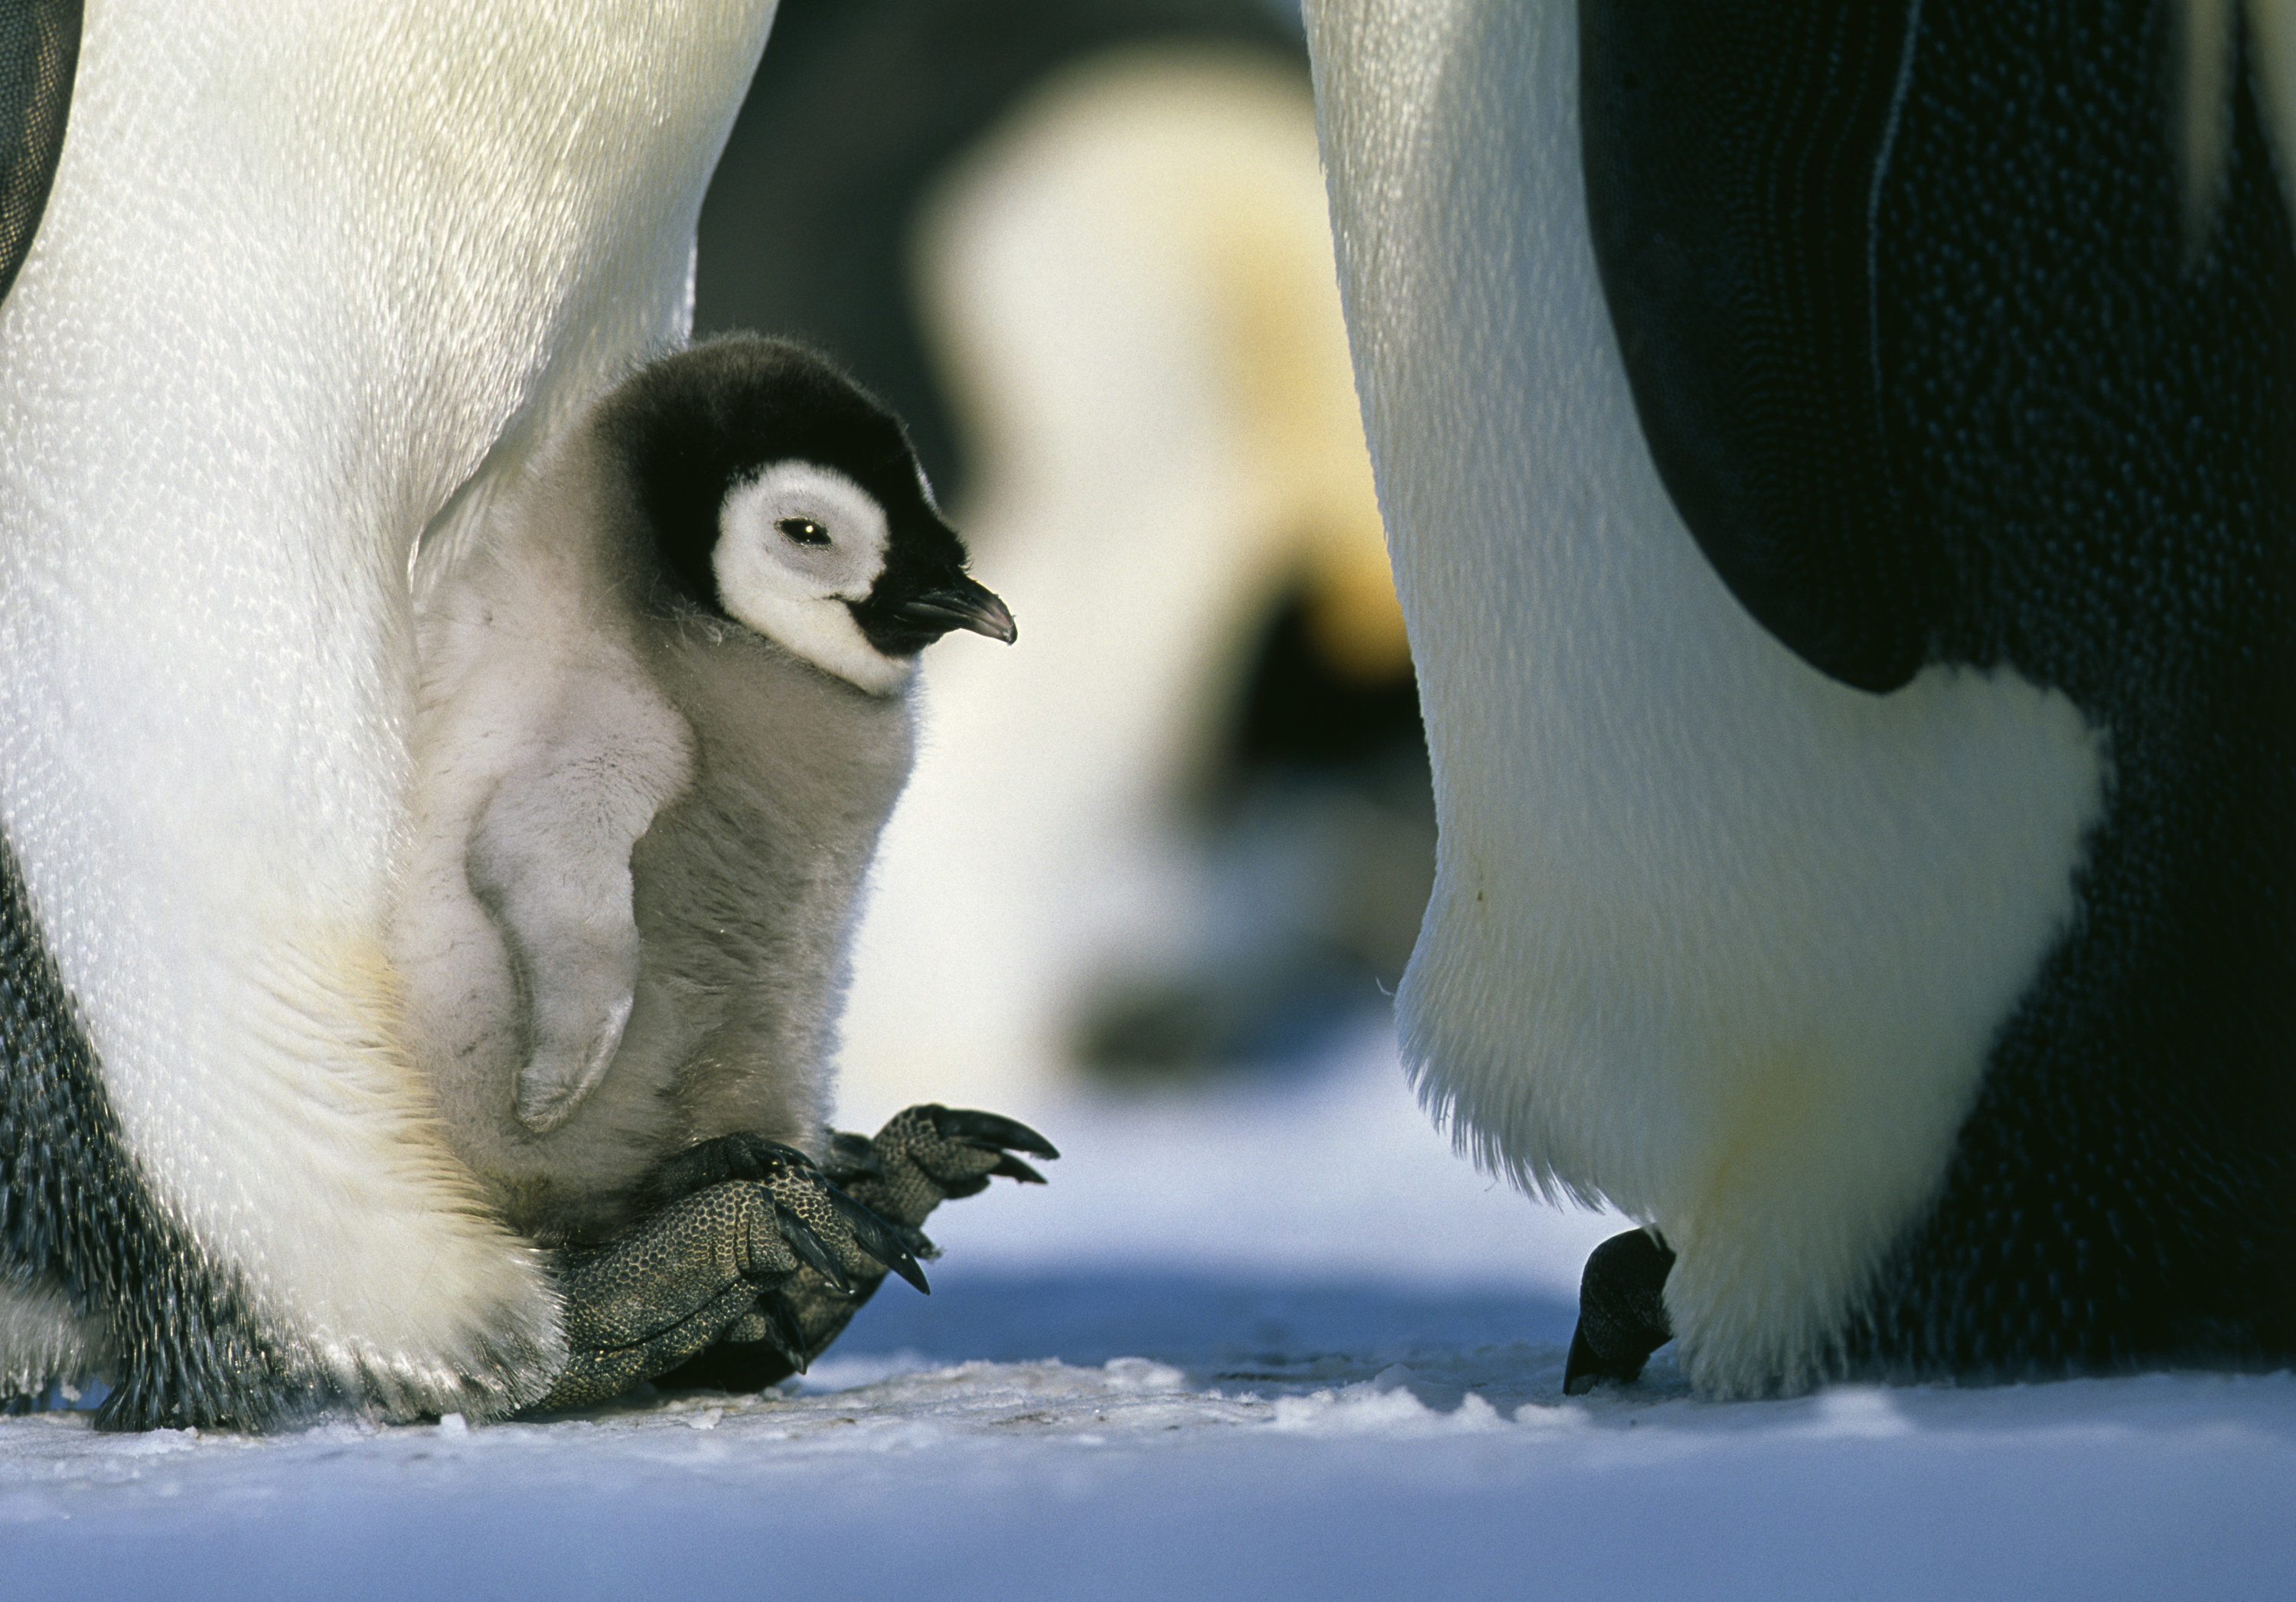 Emperor Penguin, Aptenodytes forsteri, brooding chick on feet